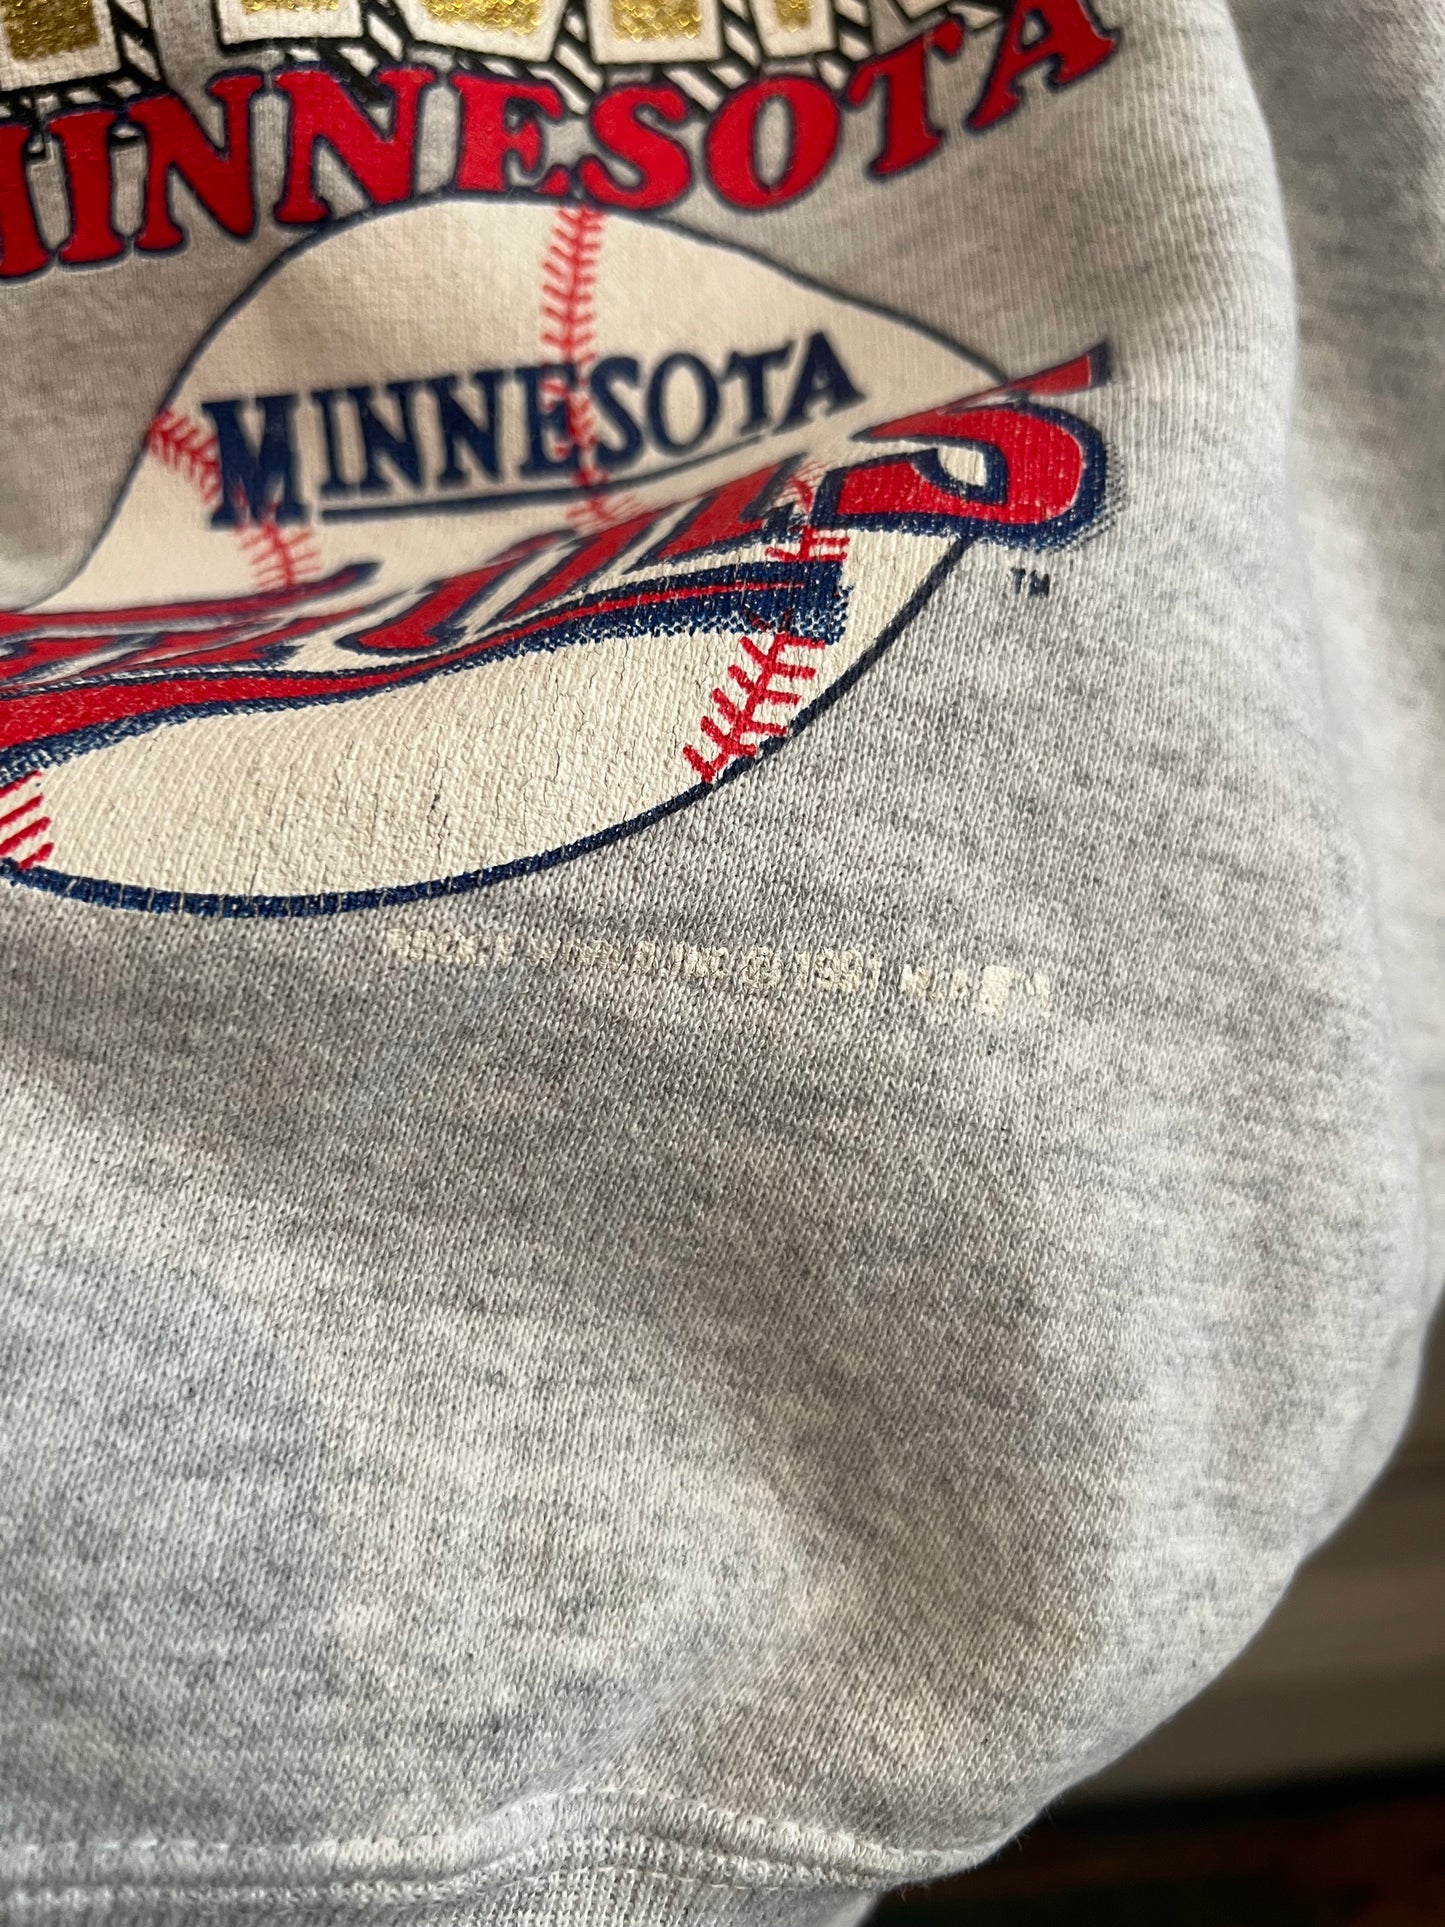 1991 Minnesota Twins Crewneck size L